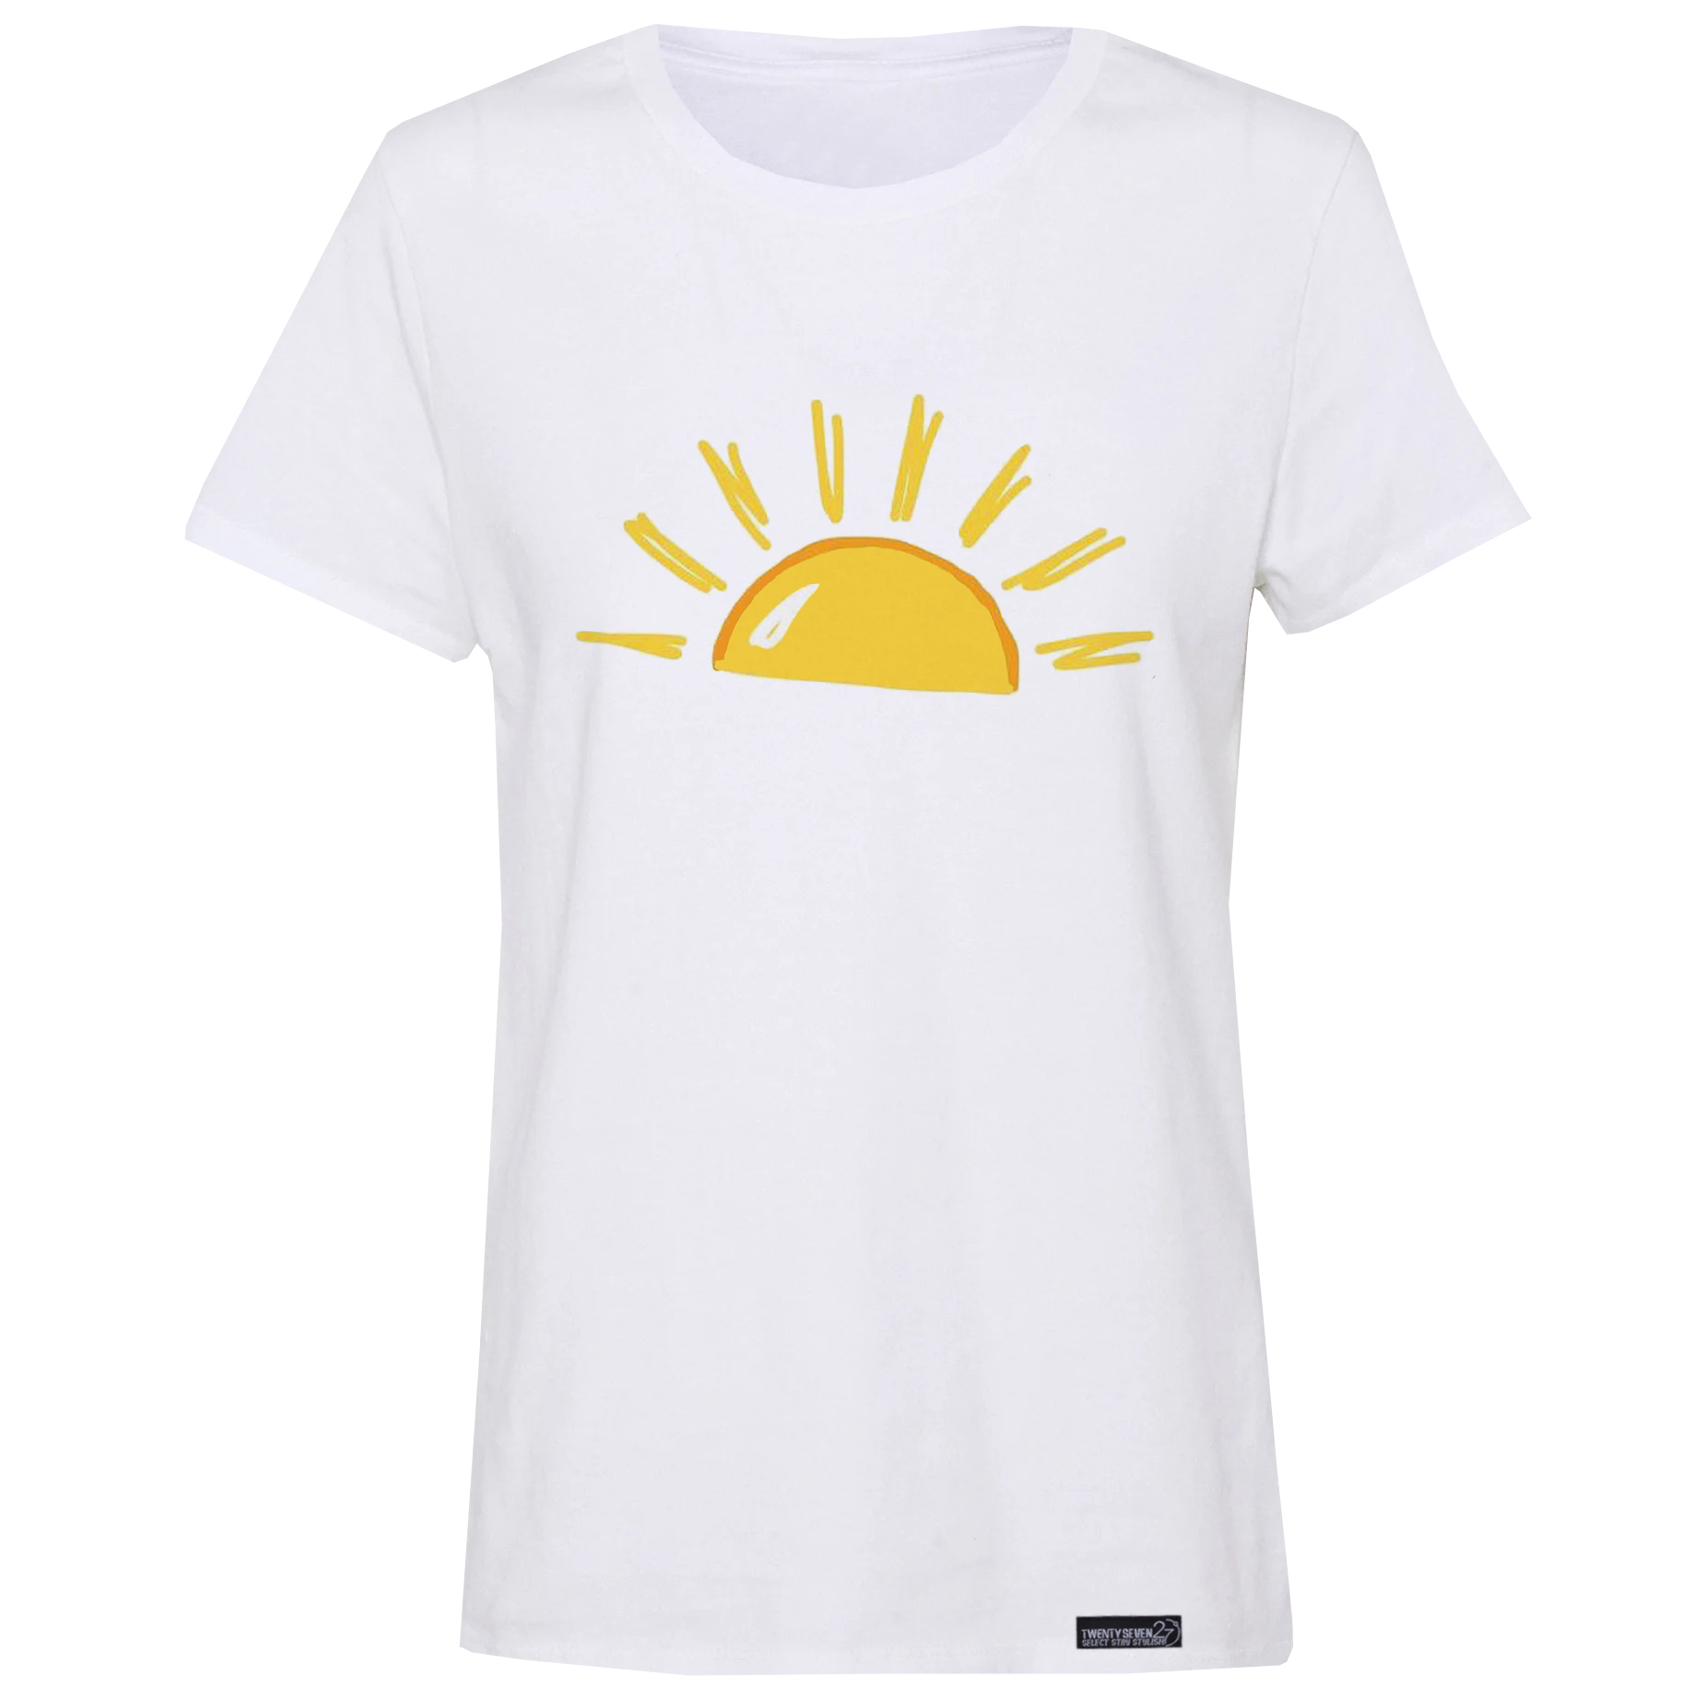 تی شرت آستین کوتاه زنانه 27 مدل خورشید کد RN620 -  - 2